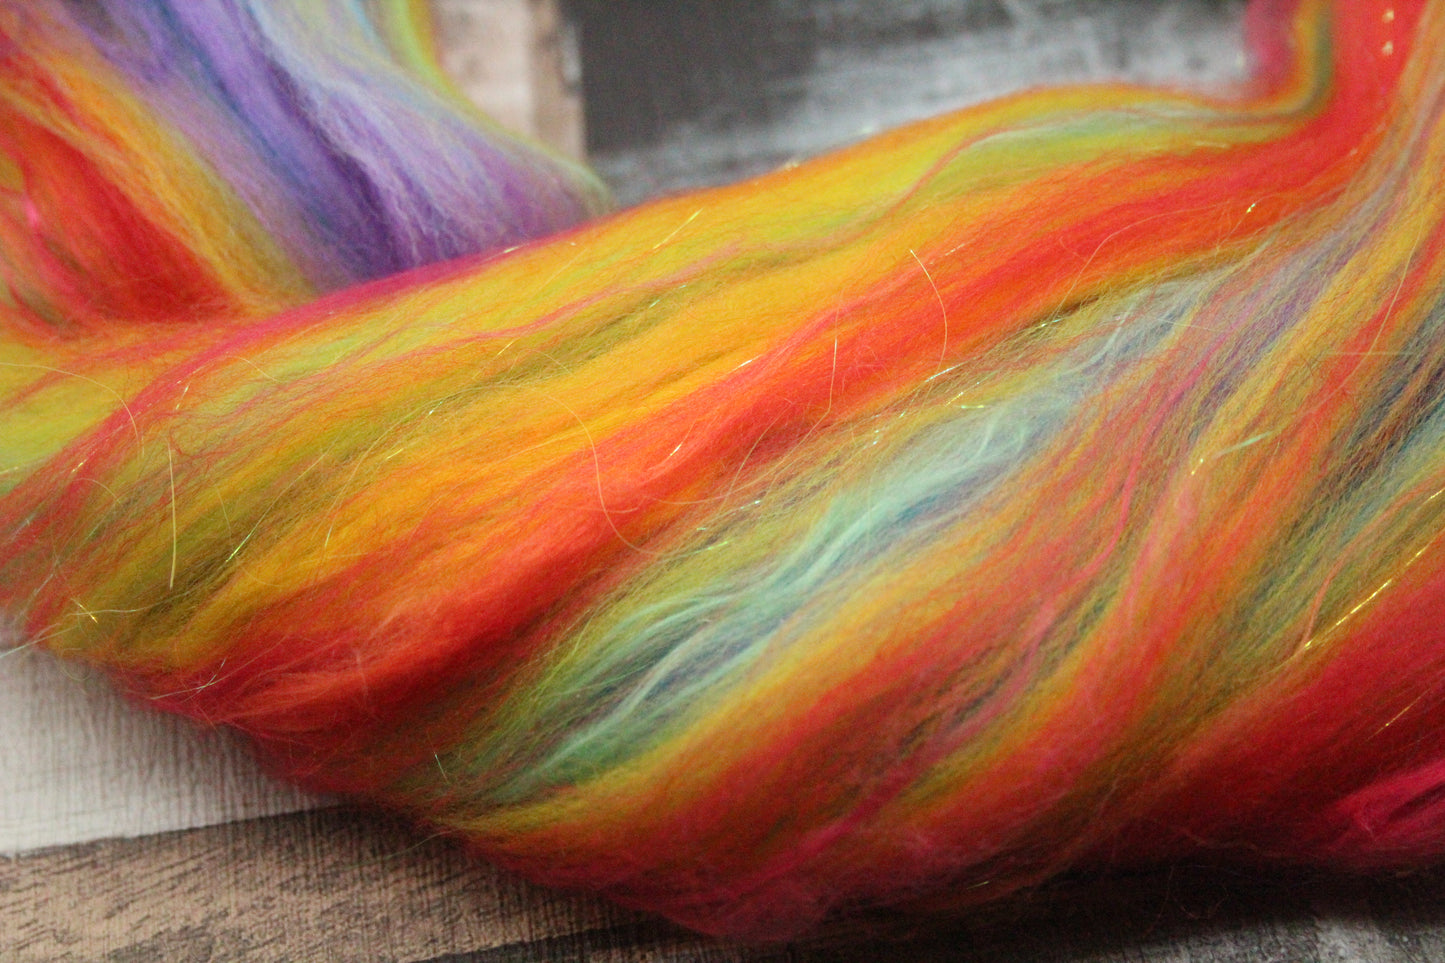 Merino Wool Blend - Rainbow - 26 grams / 0.9 oz  - Fibre for felting, weaving or spinning